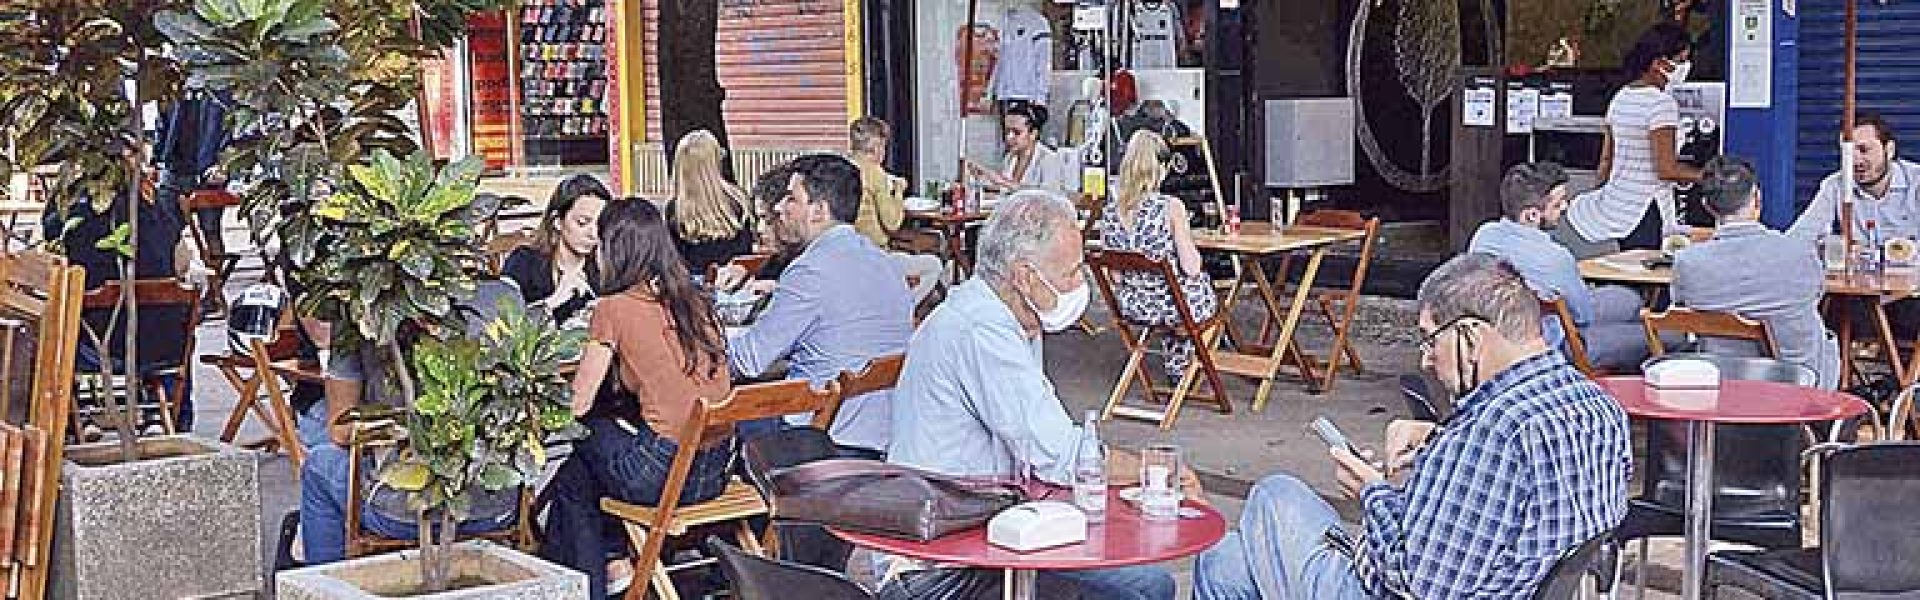 Com horário de verão, a Abrasel prevê a criação de pelos menos 30 mil empregos nos bares em Belo Horizonte |Crédito: Charles Silva Duarte/Arquivo DC